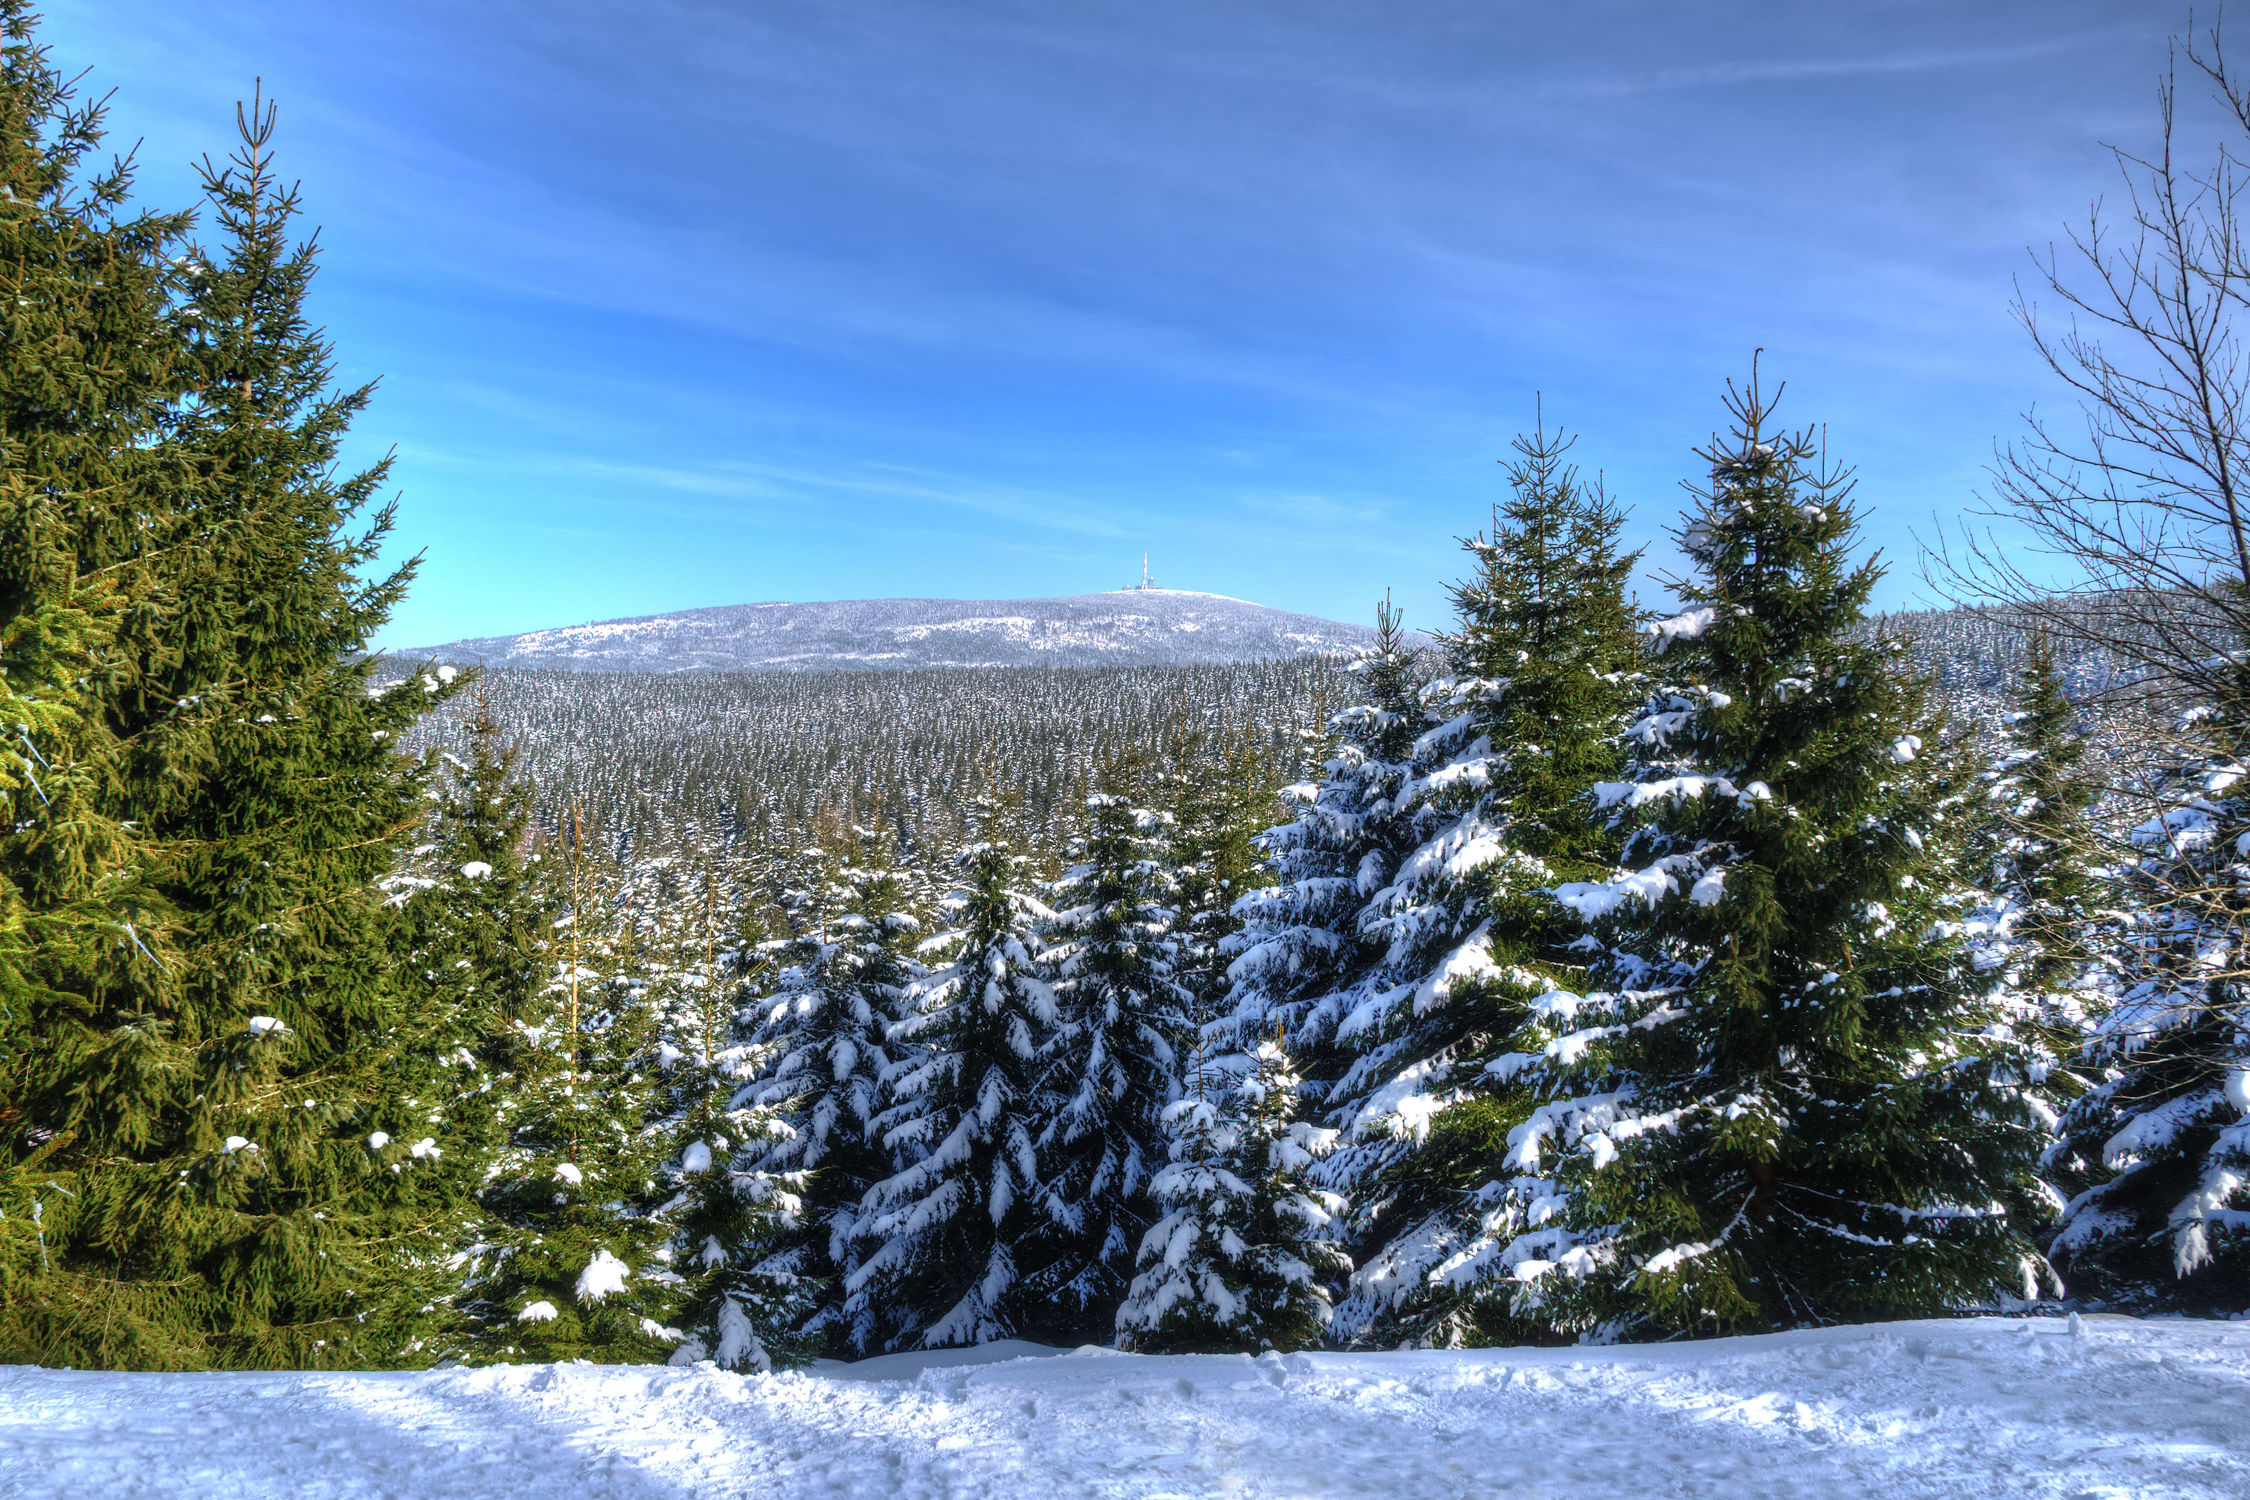 Bild mit Natur, Winter, Schnee, Wälder, Tannen, Wald, Harz, Gebirge, Wandern